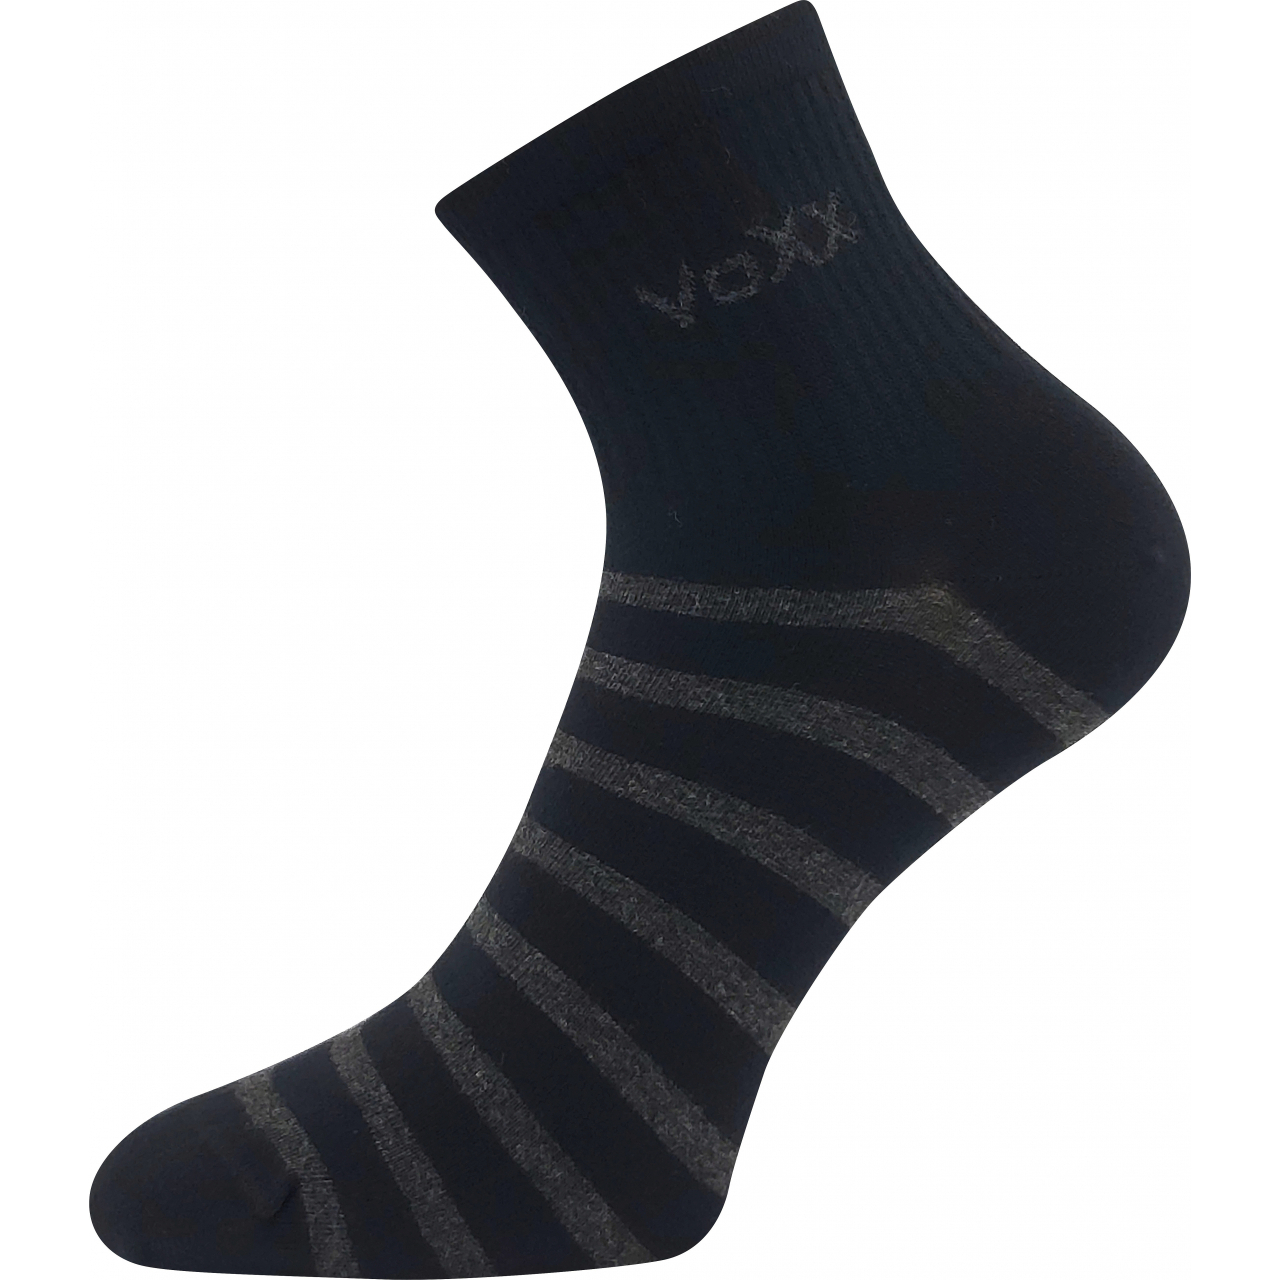 Ponožky dámské klasické Voxx Boxana Pruhy - černé-šedé, 39-42